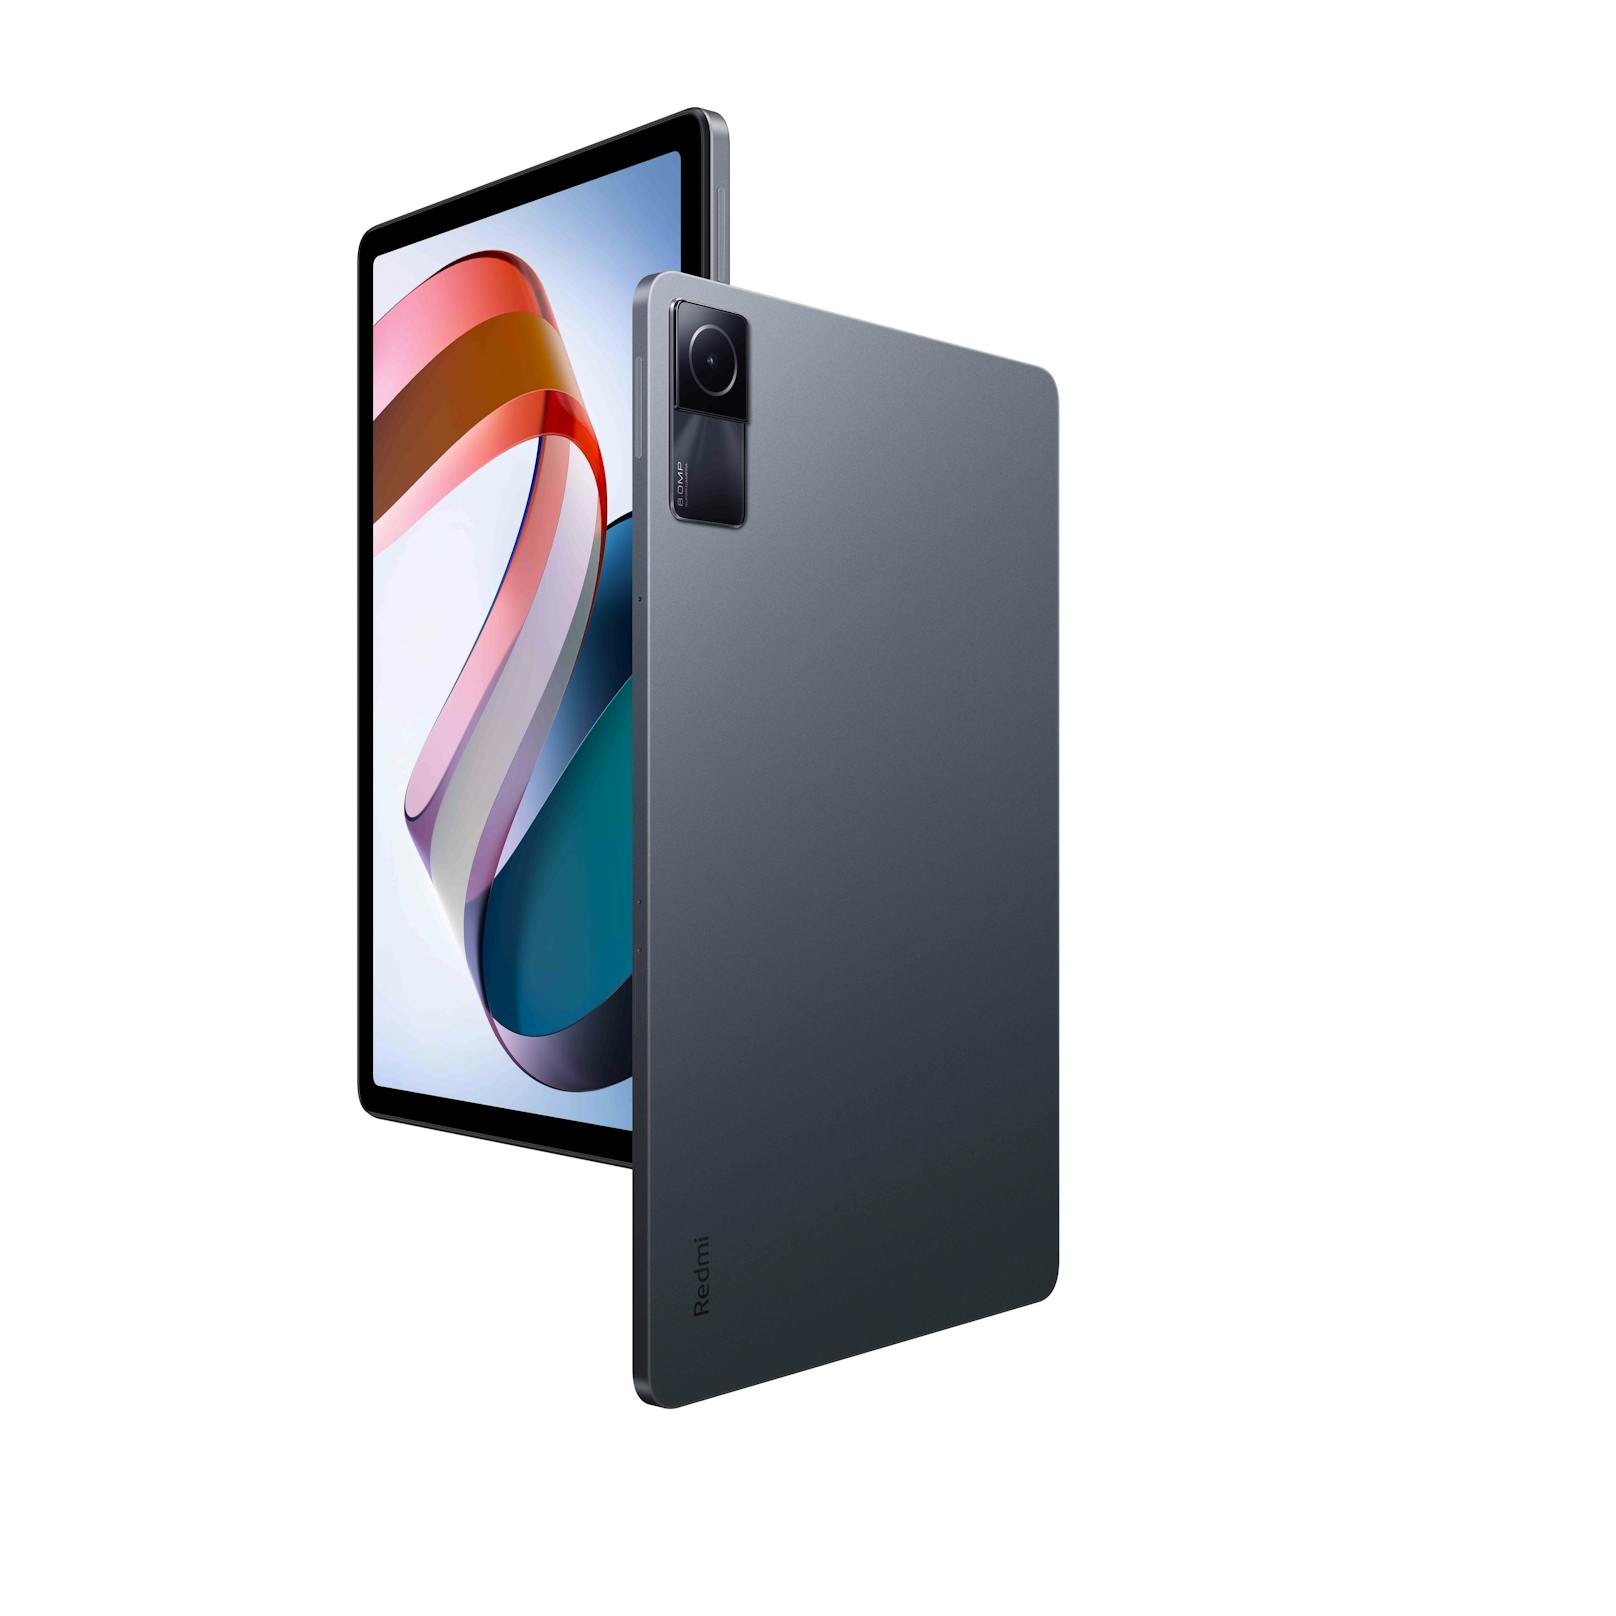 ...&nbsp;von 90 Hertz und ein 10,61-Zoll-Display. Laut Xiaomi ist es das erste Tablet weltweit, das die SGS-Zertifizierung für geringe visuelle Ermüdung erhalten hat.